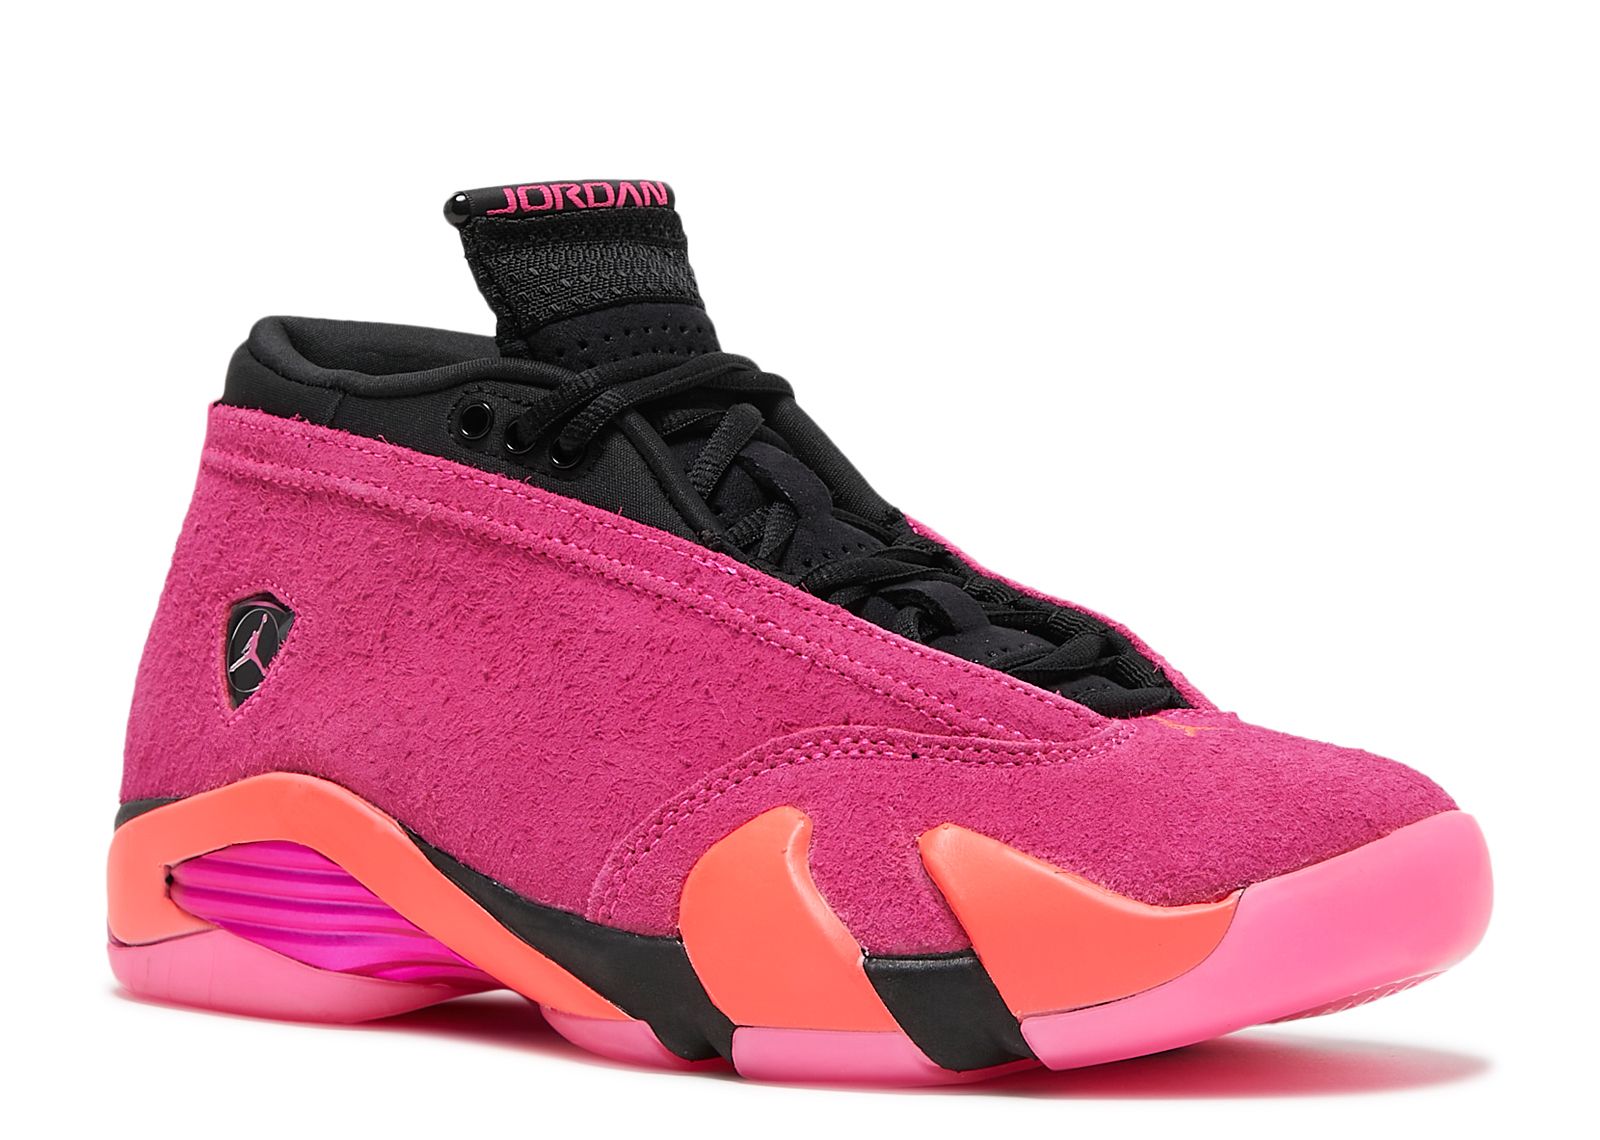 Nike Air Jordan 14 Low Shocking Pink Black DH4121-600 Women's Size